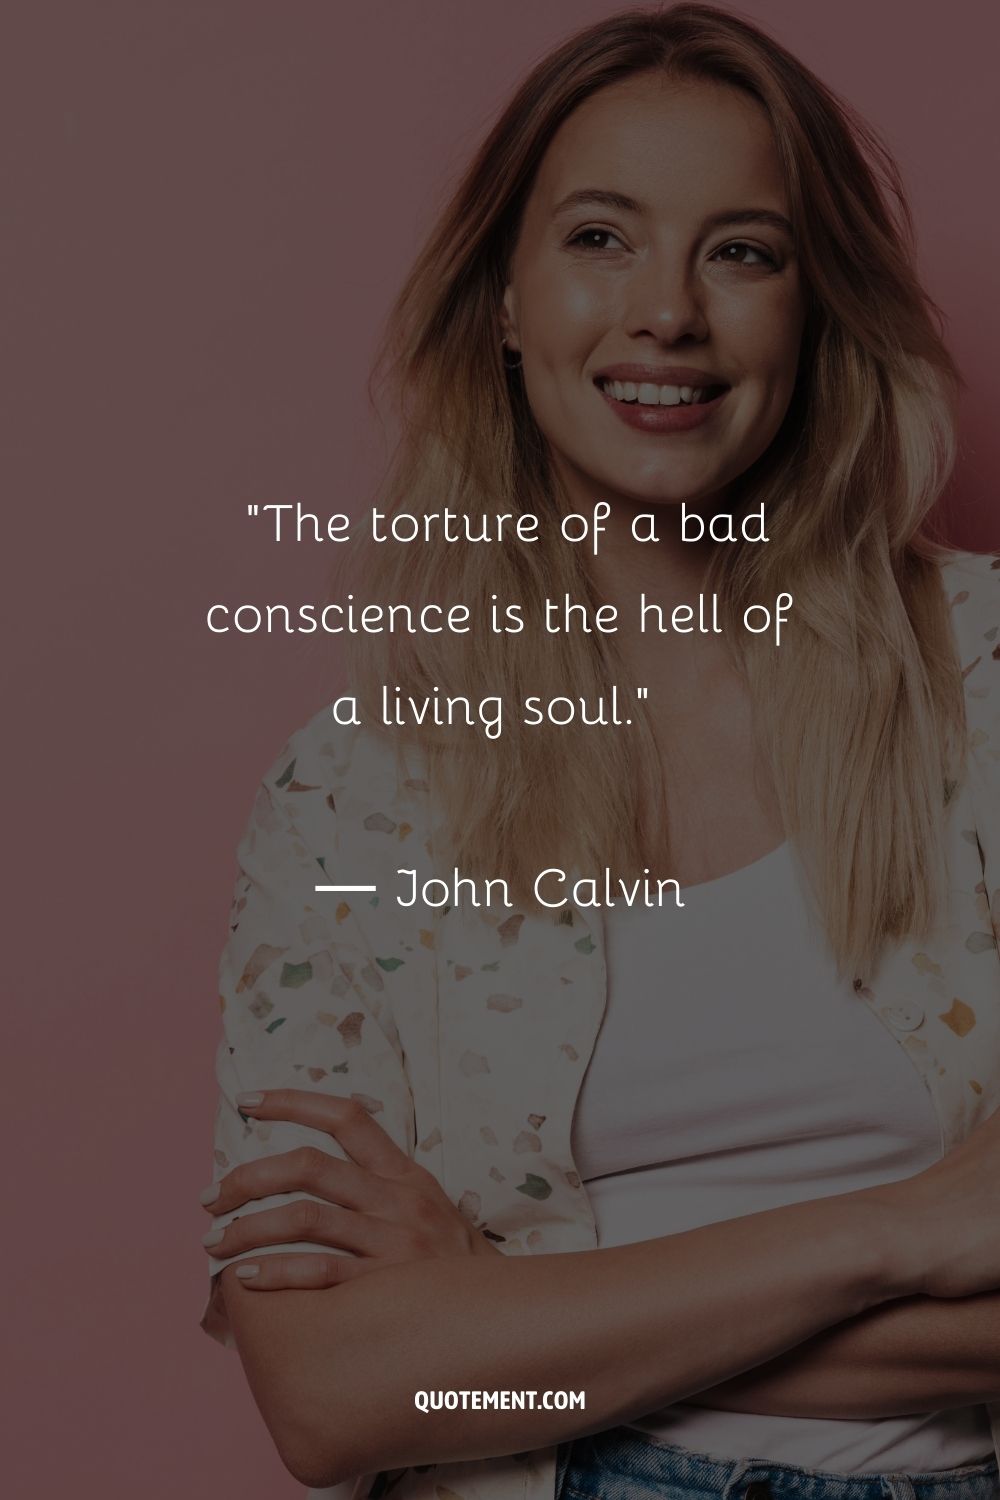 La tortura de una mala conciencia es el infierno de un alma viva